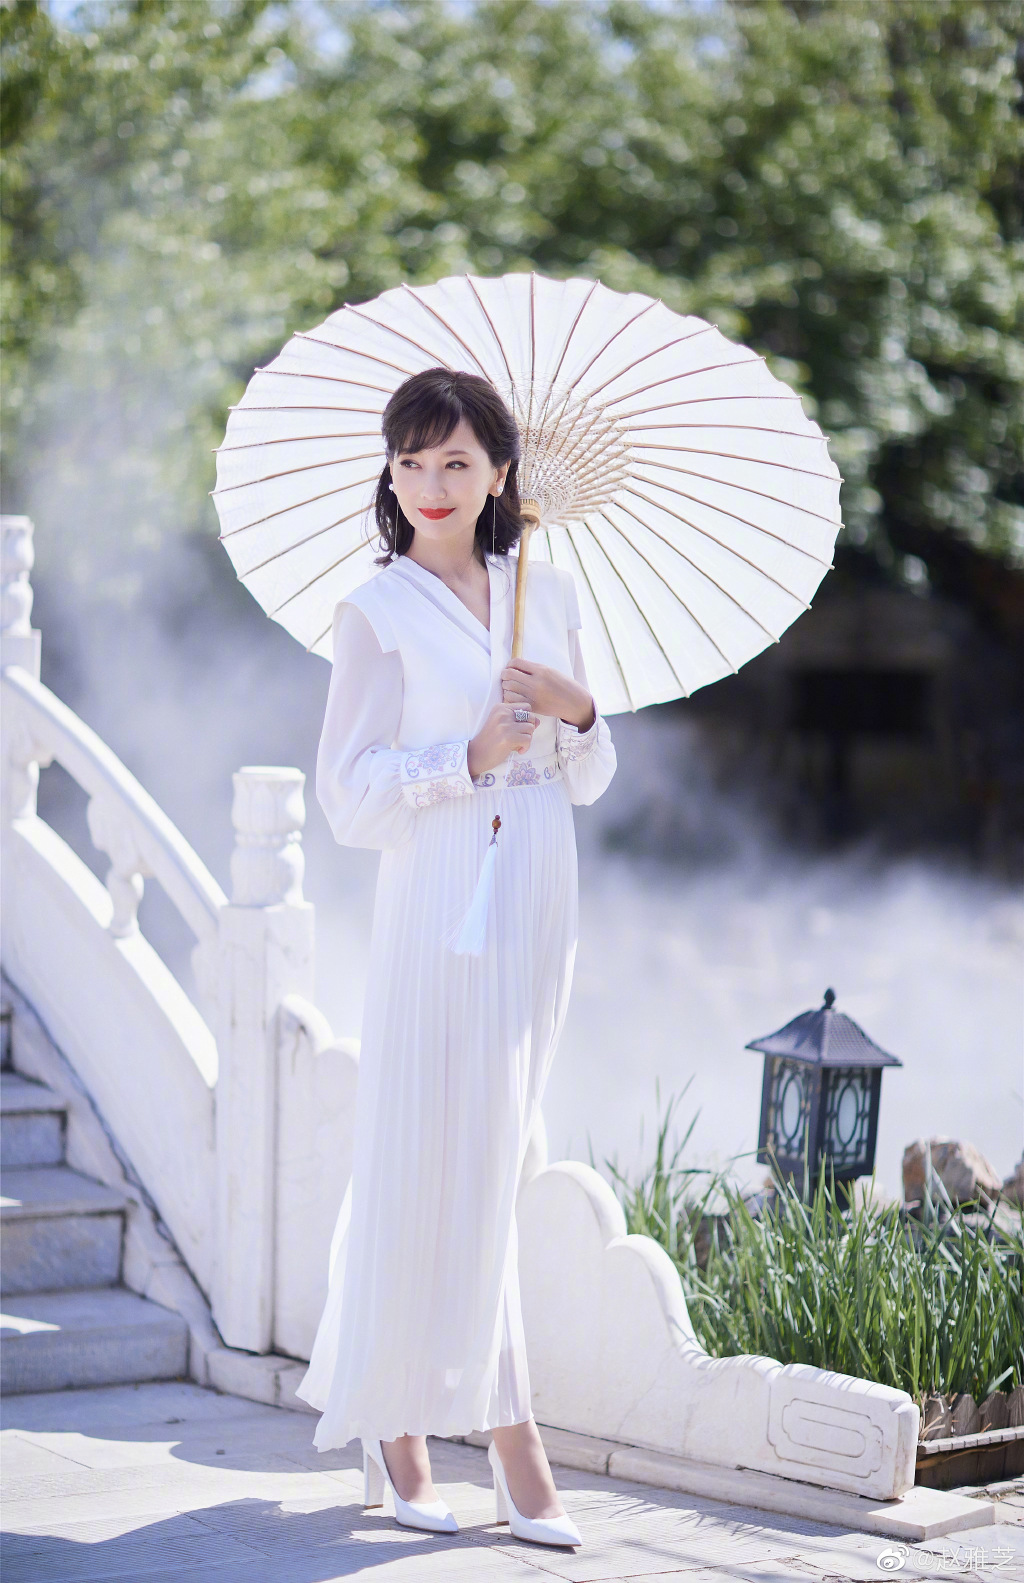 赵雅芝穿白裙优雅迷人 撑油纸伞漫步桥上  第2张